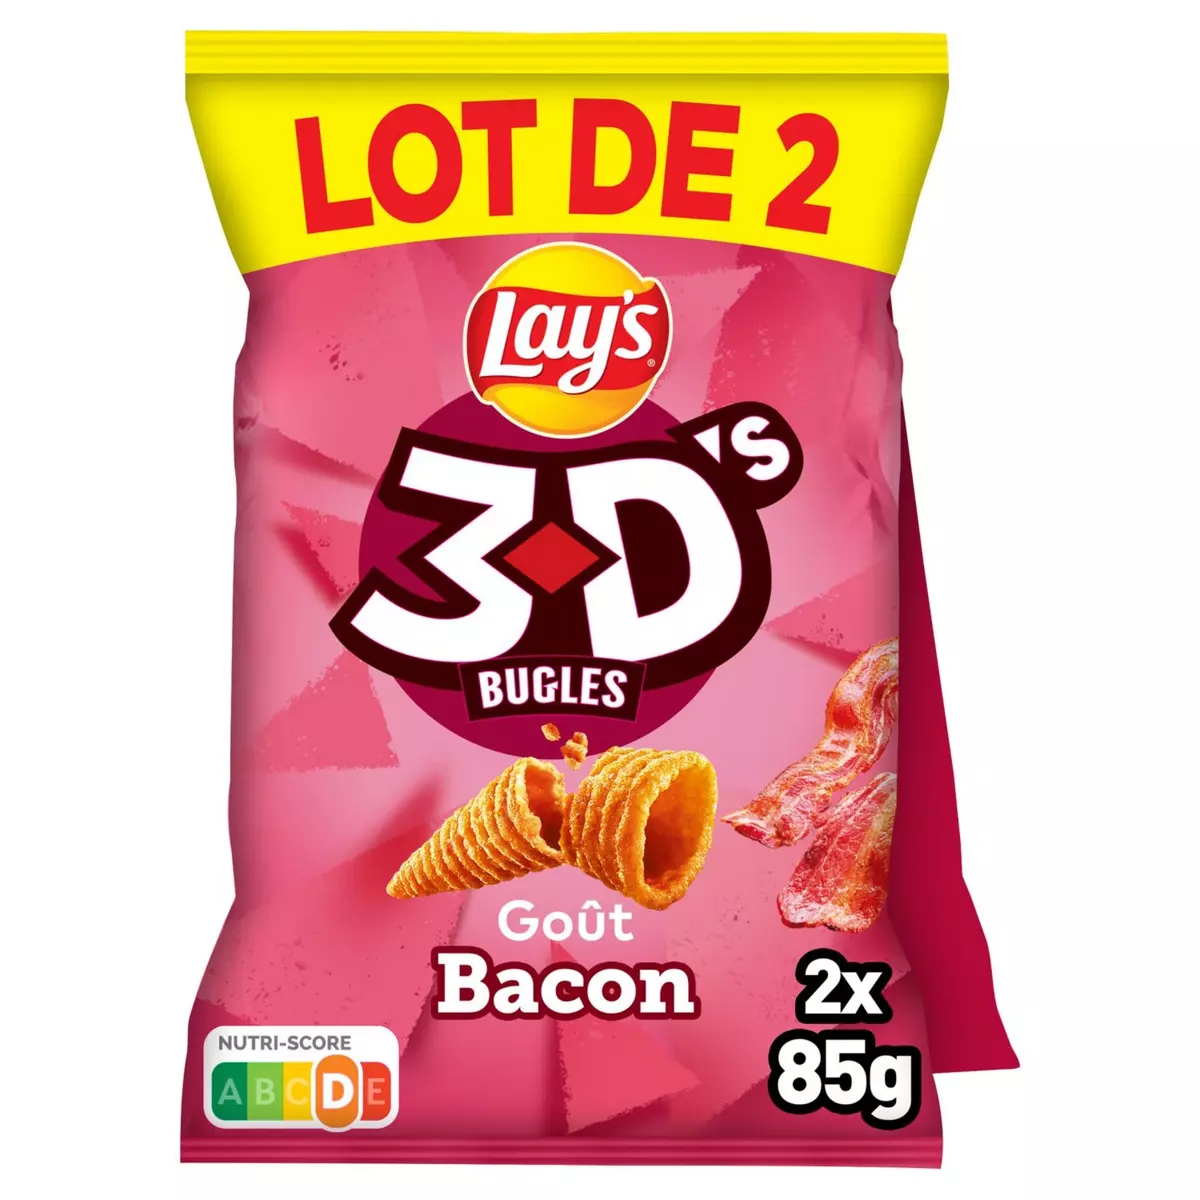 LAY'S Biscuits soufflés 3D's goût bacon lot de 2 2x85g